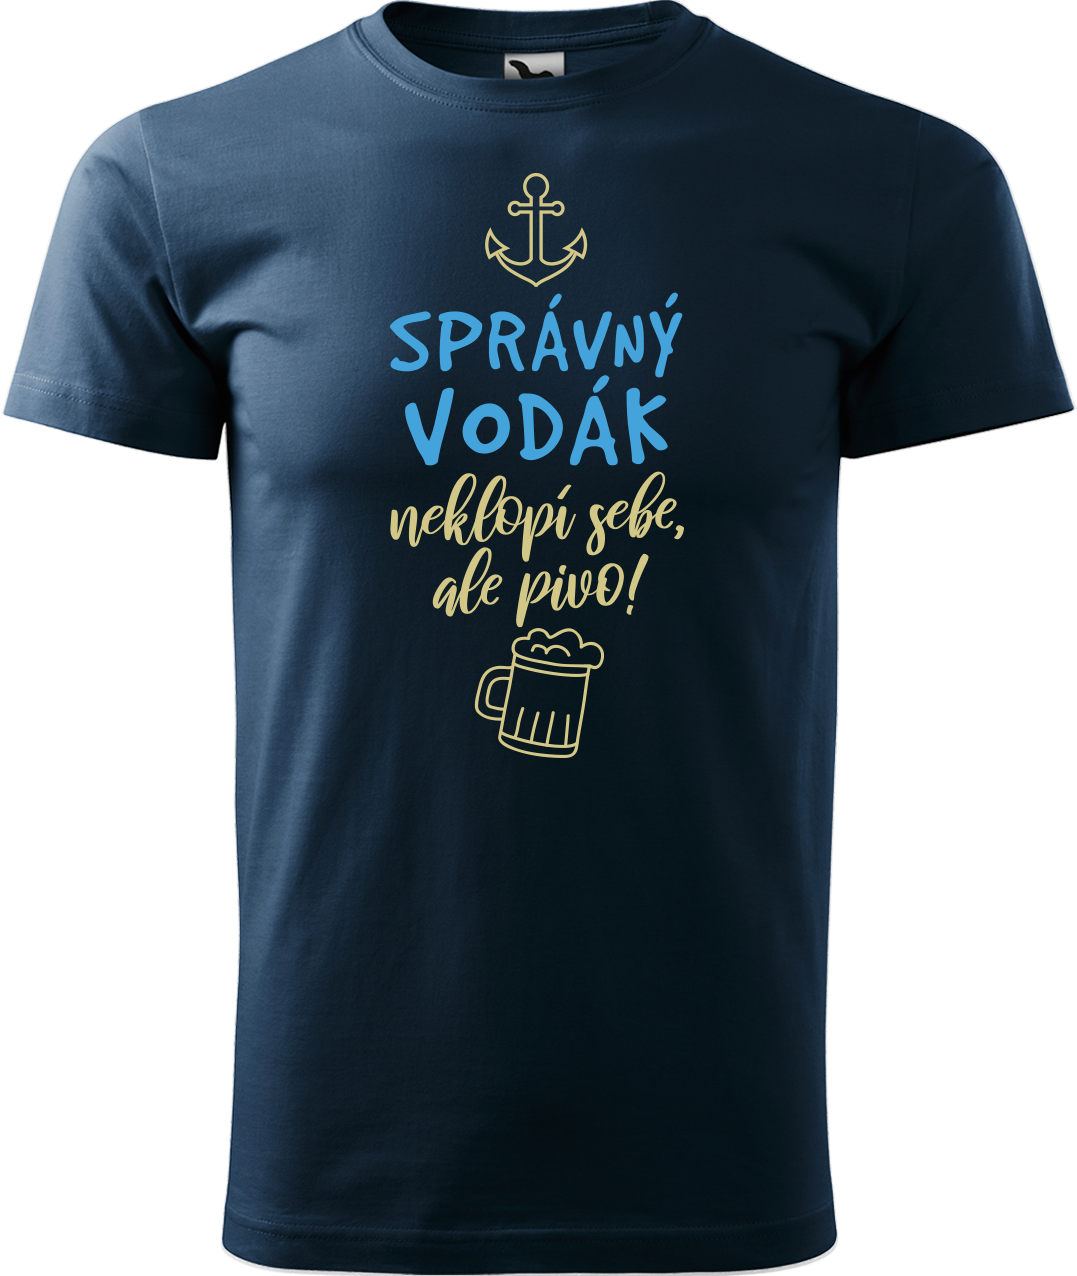 Pánské vodácké tričko - Správný vodák Velikost: S, Barva: Námořní modrá (02)